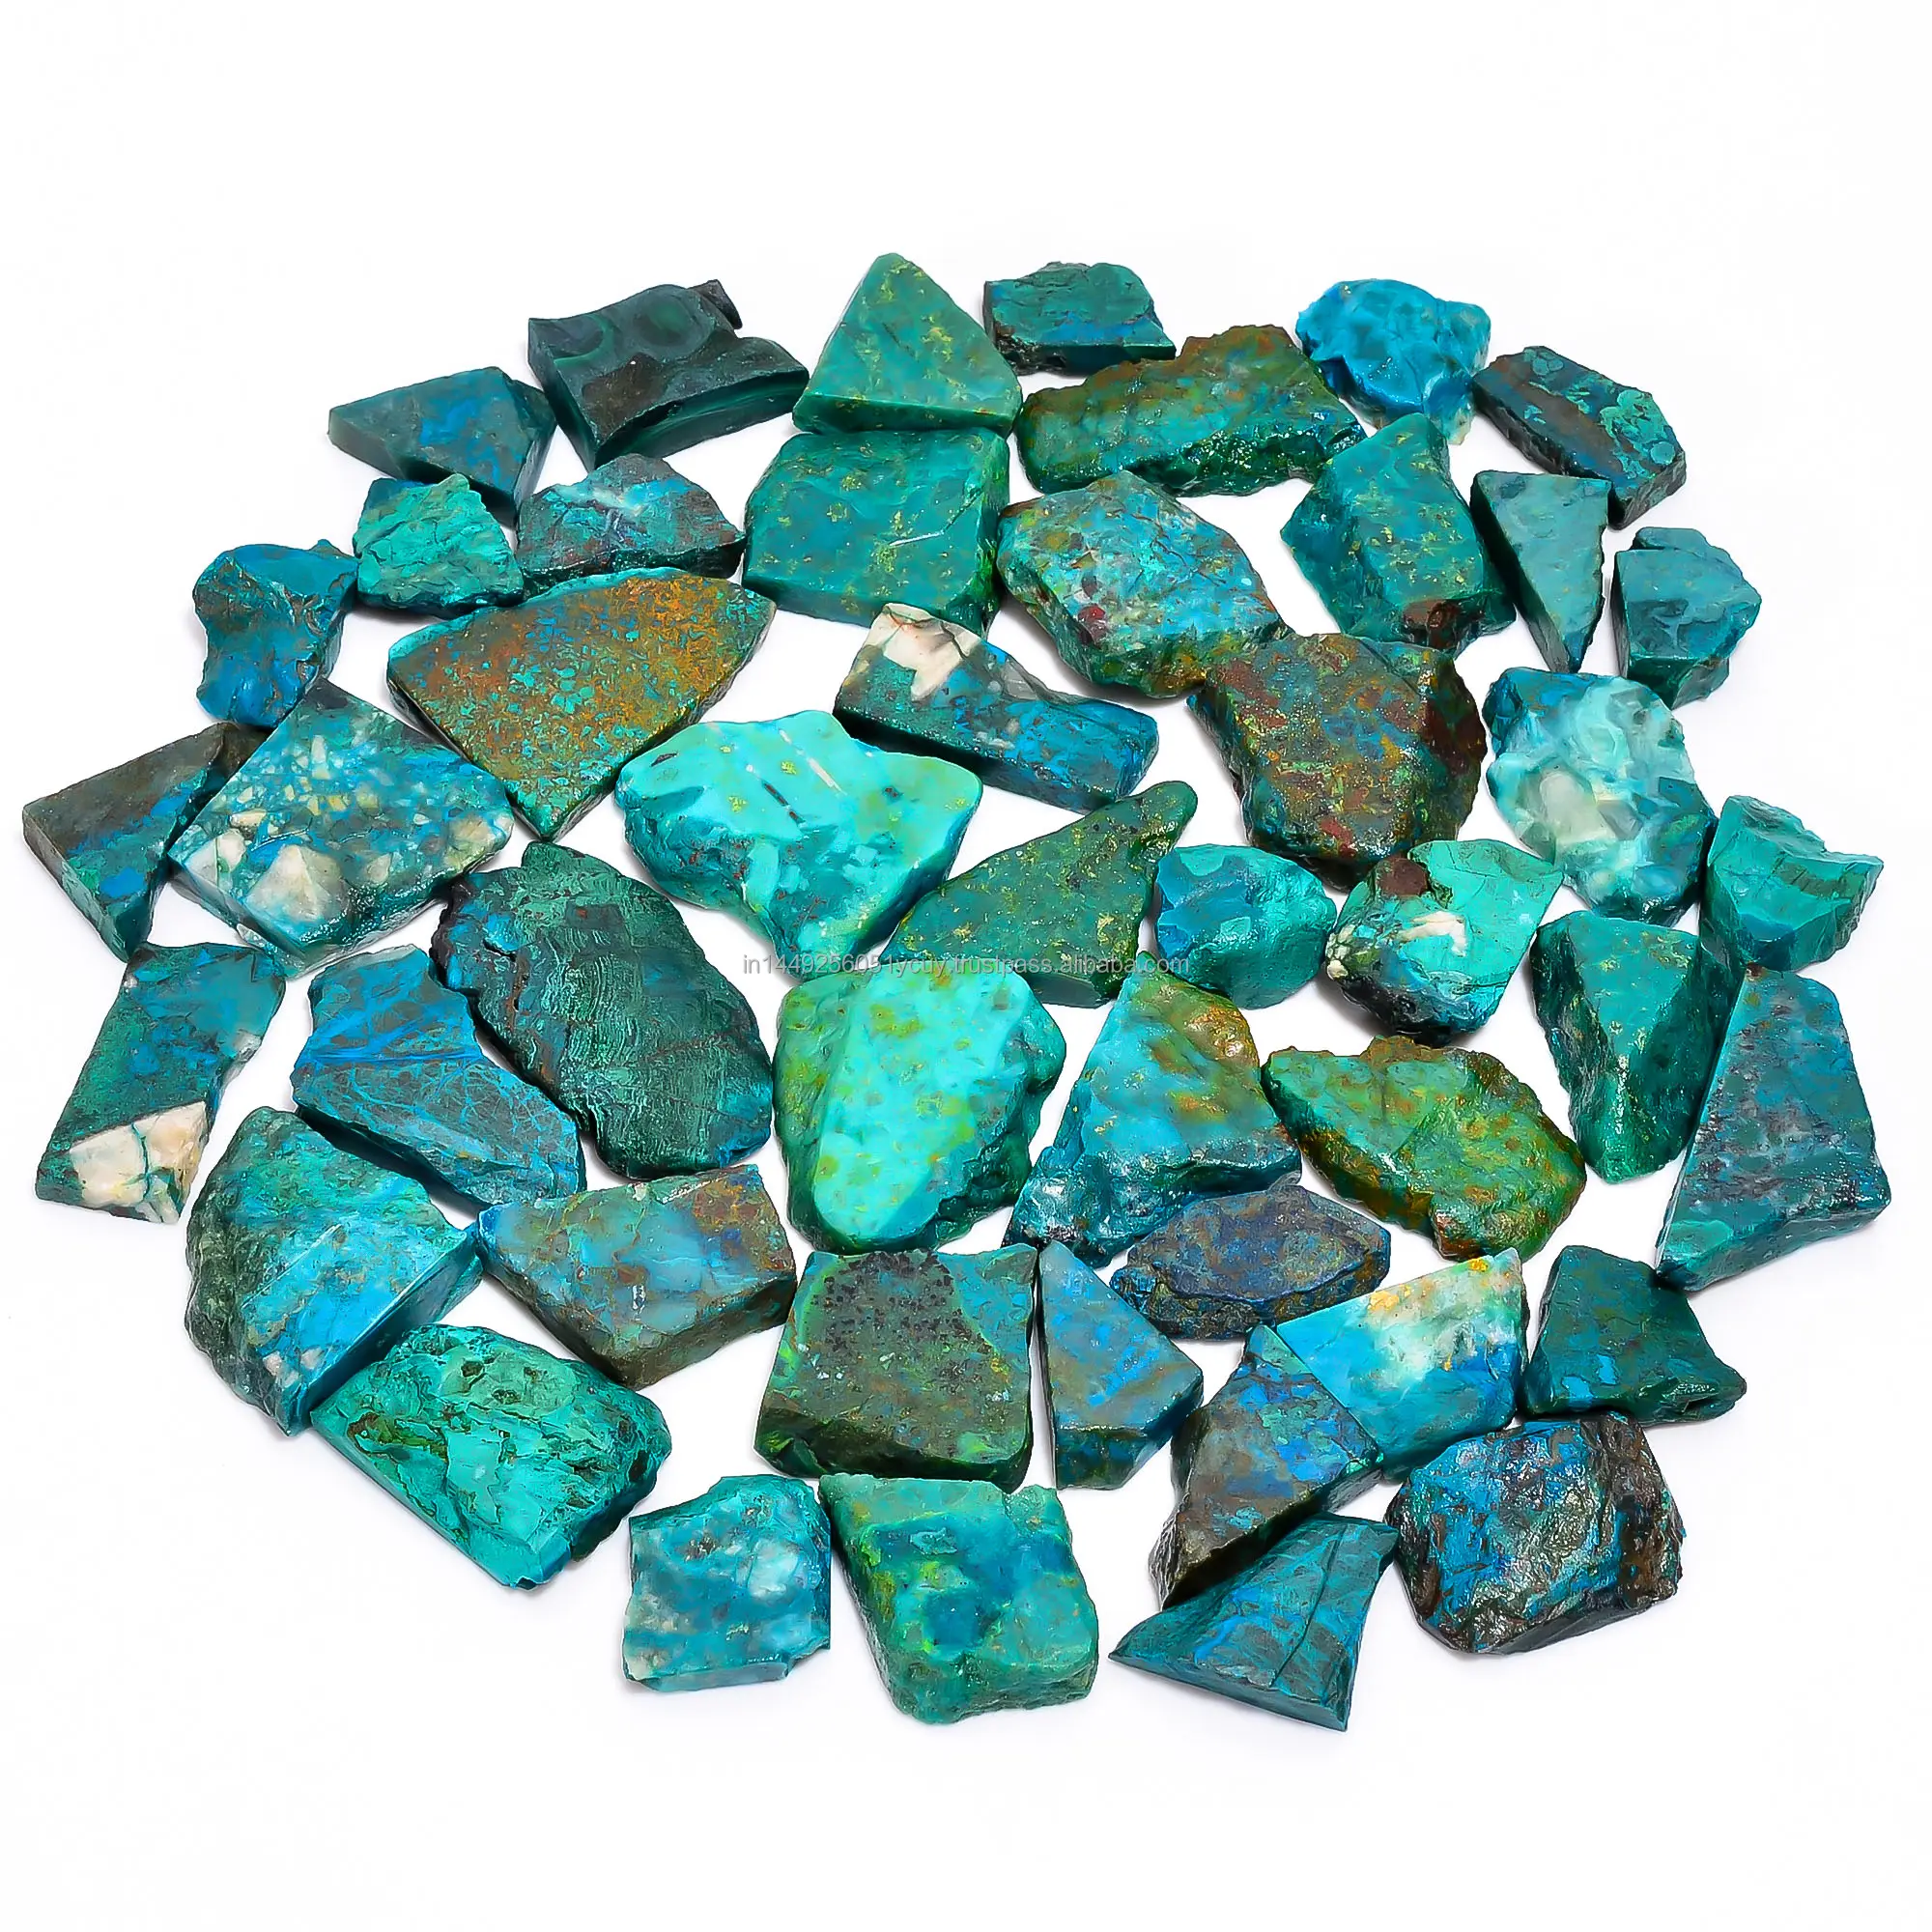 Lotto all'ingrosso di pietre preziose minerali naturali sciolte fette di crisocolla grezze e pezzi in colori vivaci